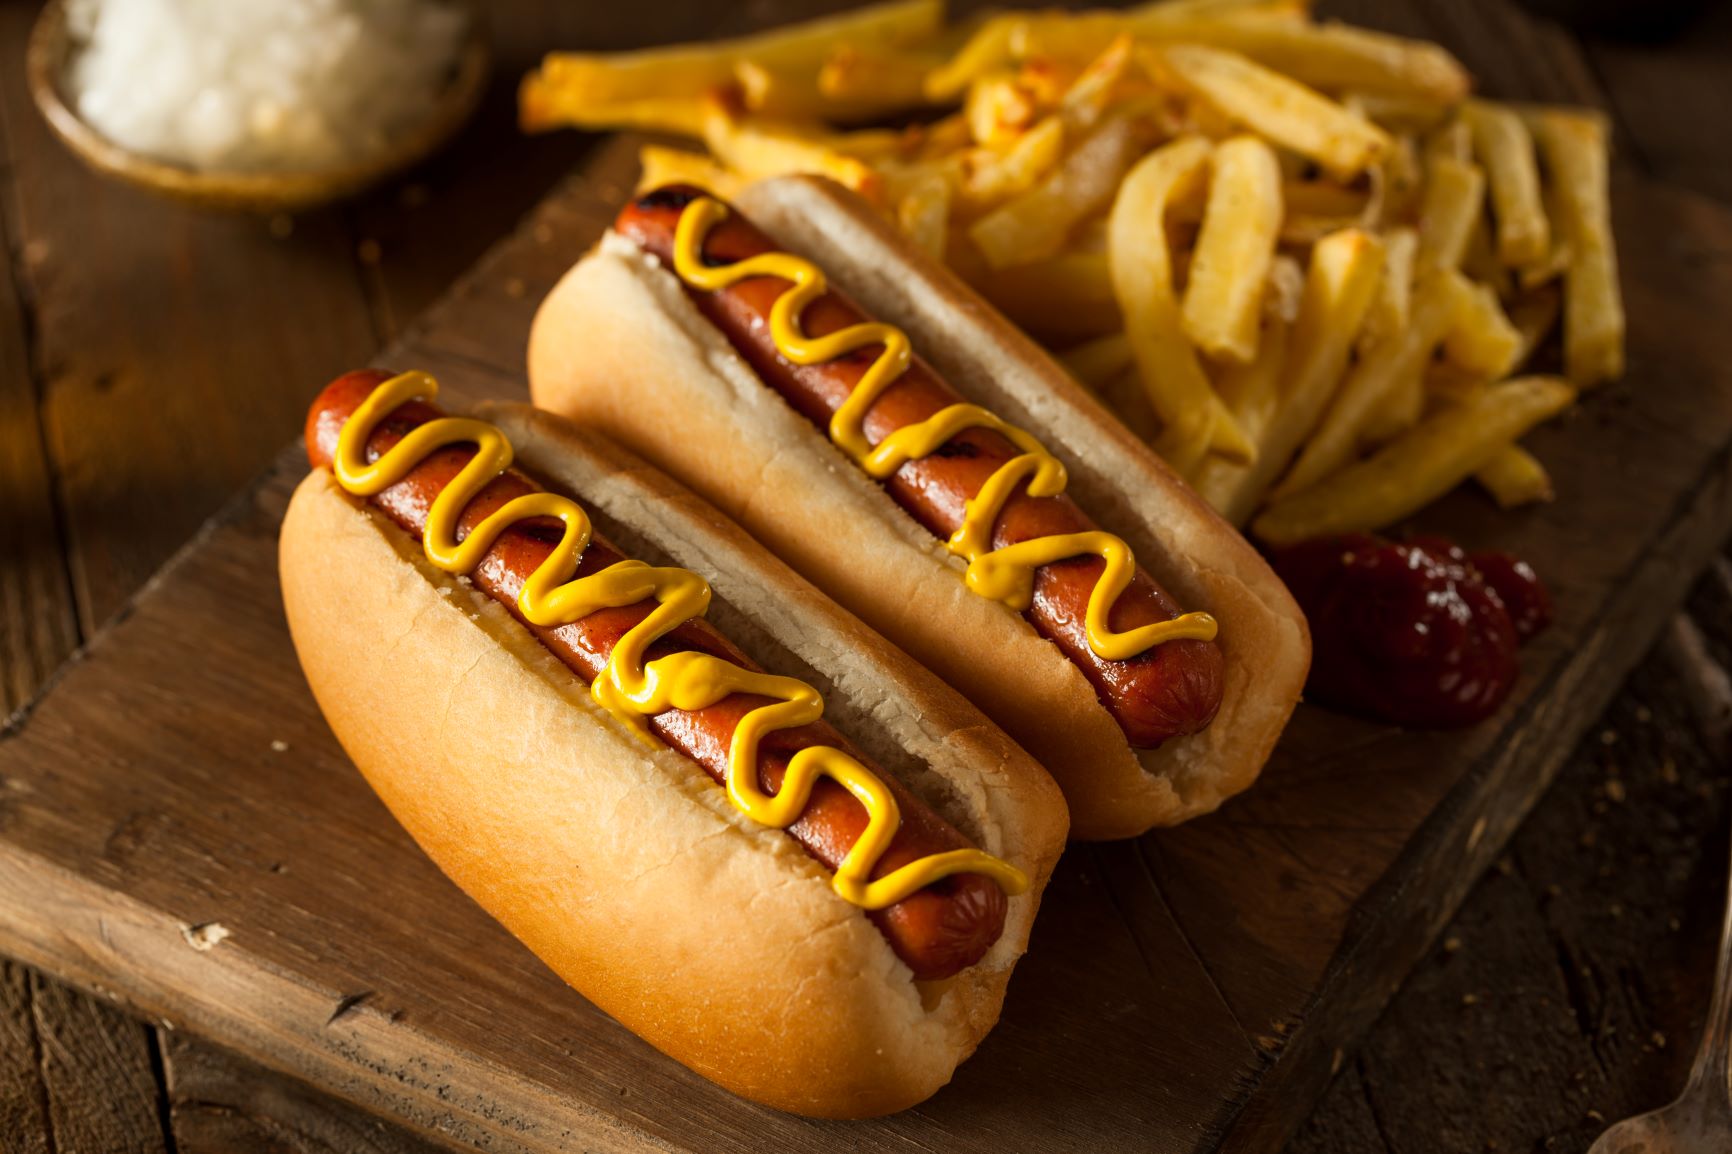 Perrito caliente o hot dog, ¿por qué se llama así?